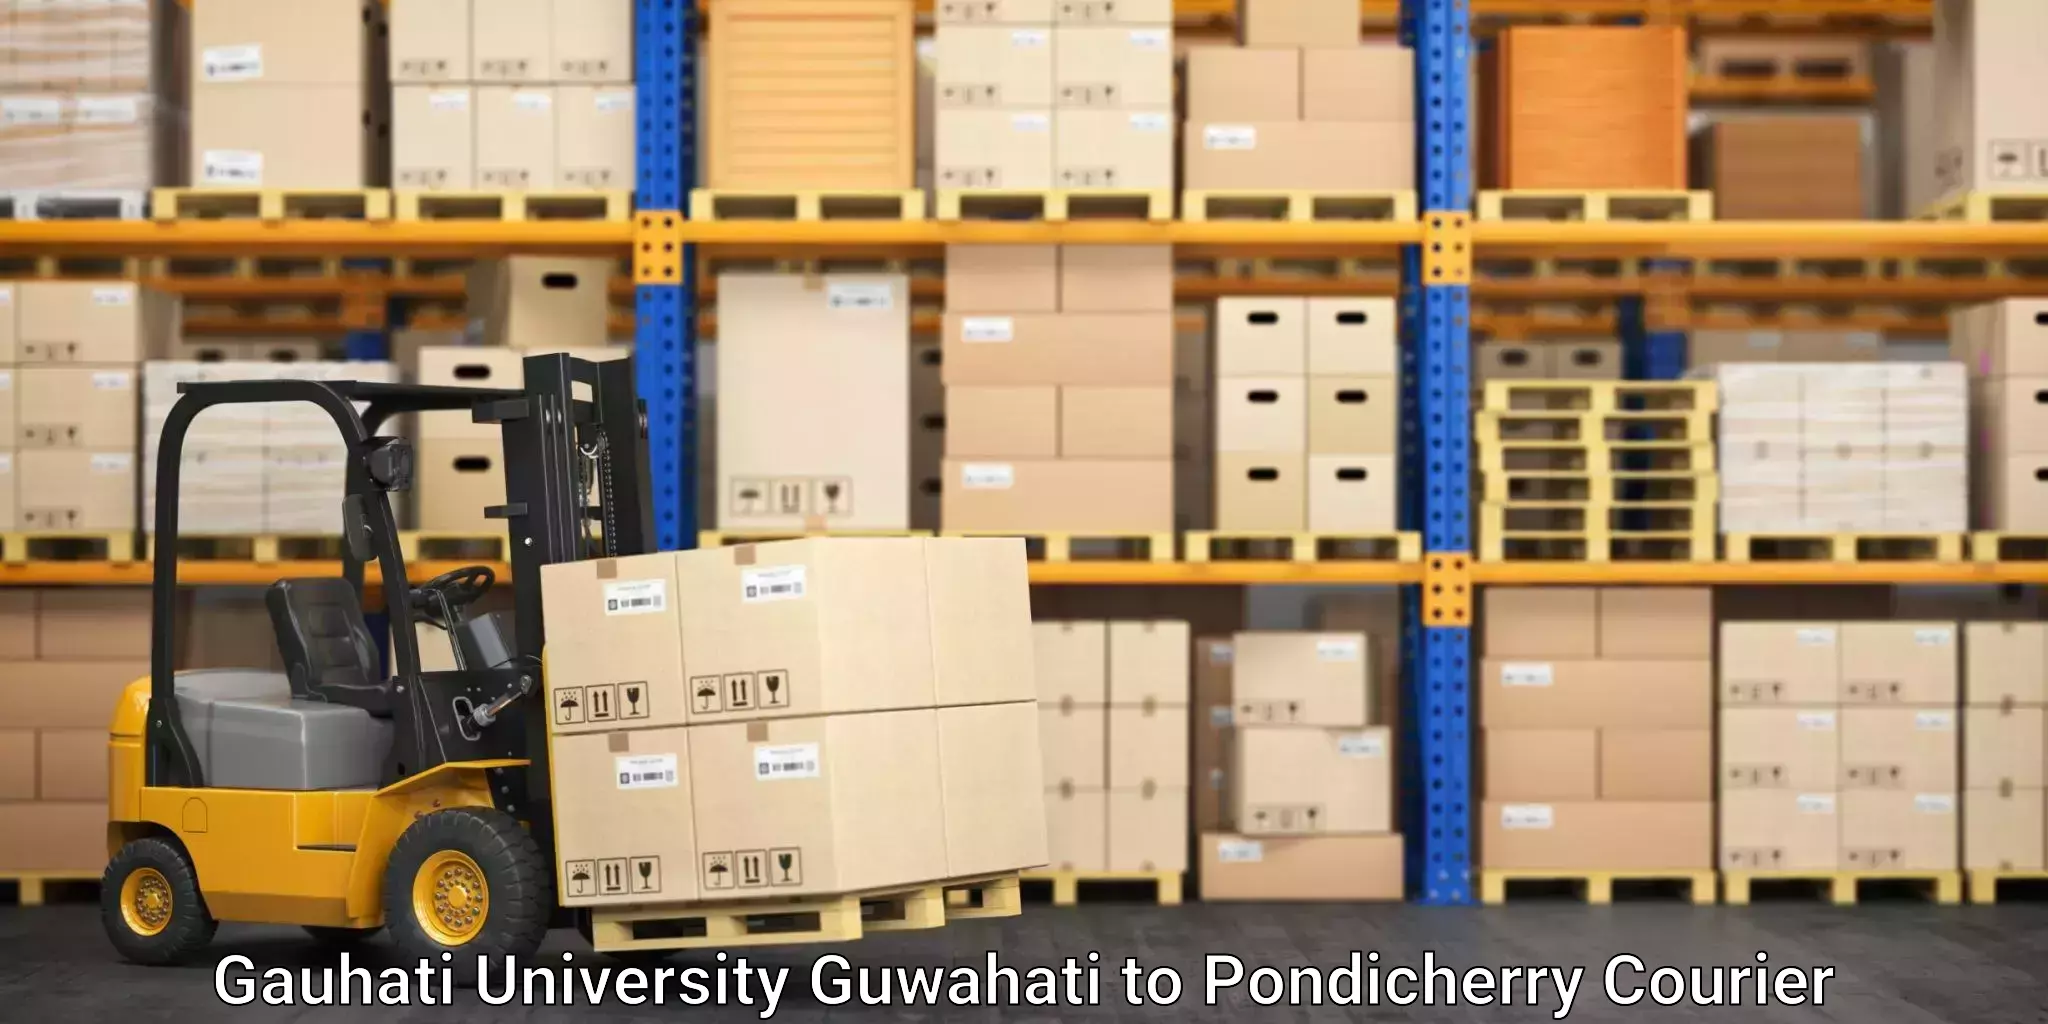 Customer-focused courier Gauhati University Guwahati to Pondicherry University